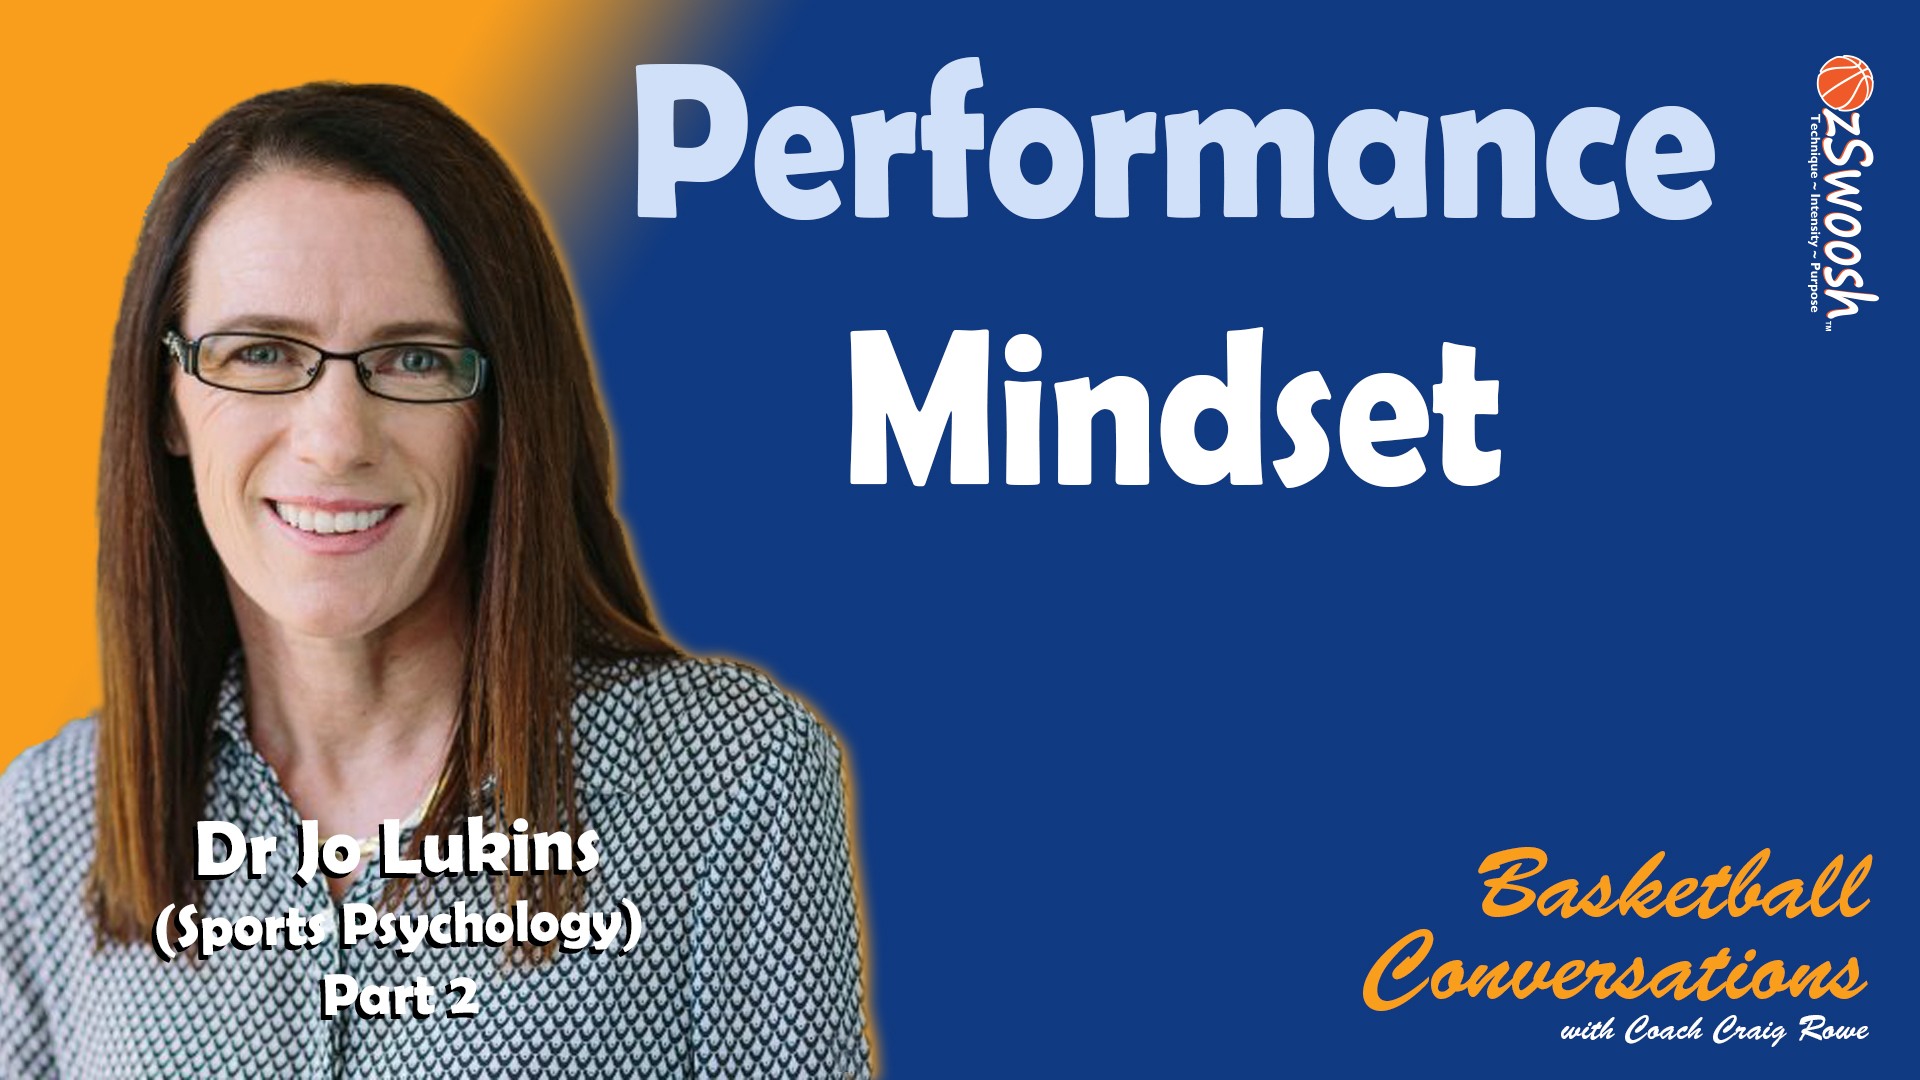 The Performance Mindset - Dr Jo Lukins (Pt 2)